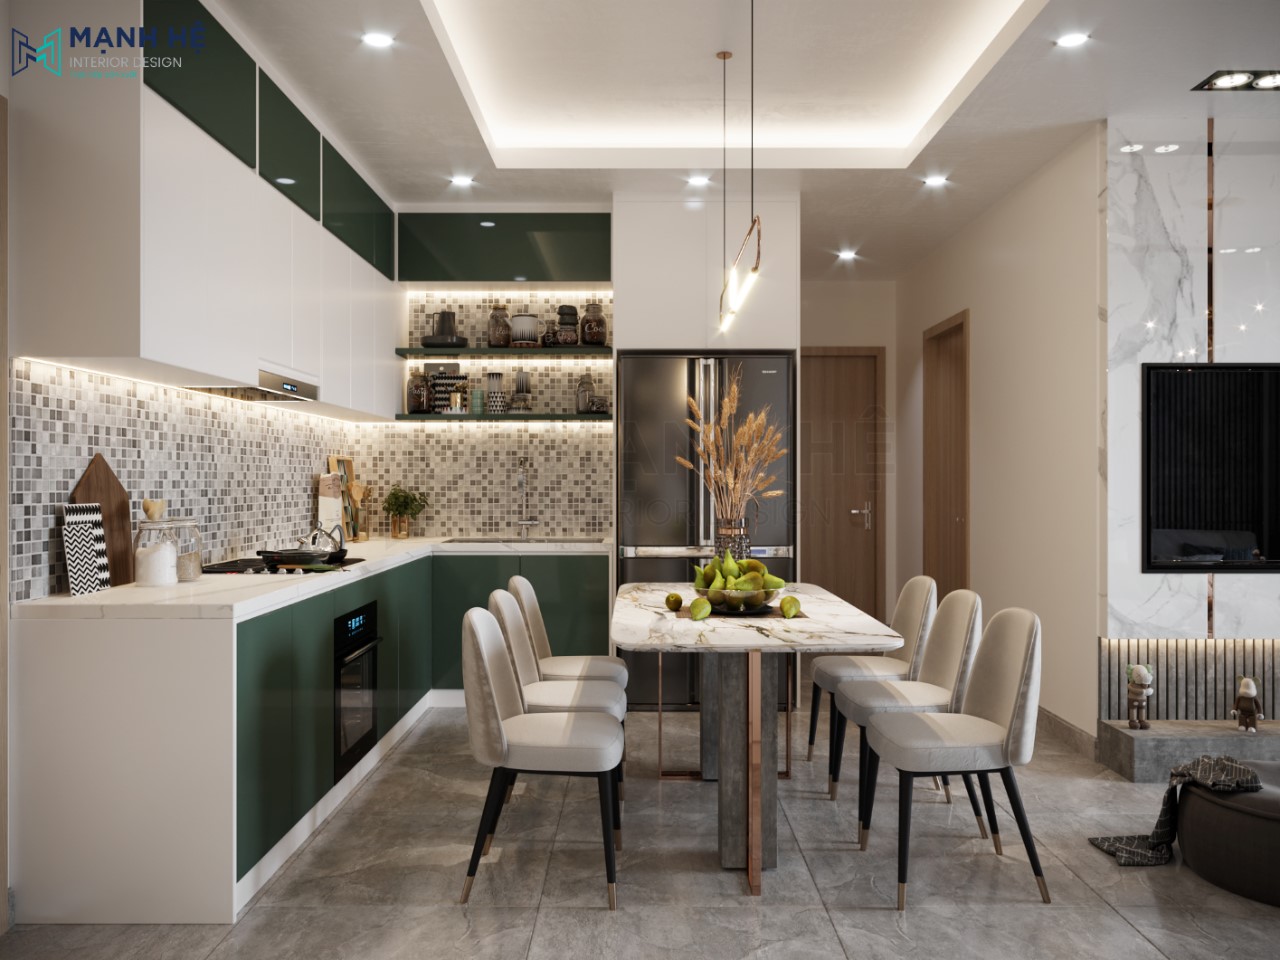 Tủ bếp tone xanh rêu kết hợp trắng thời thượng và hiện đại